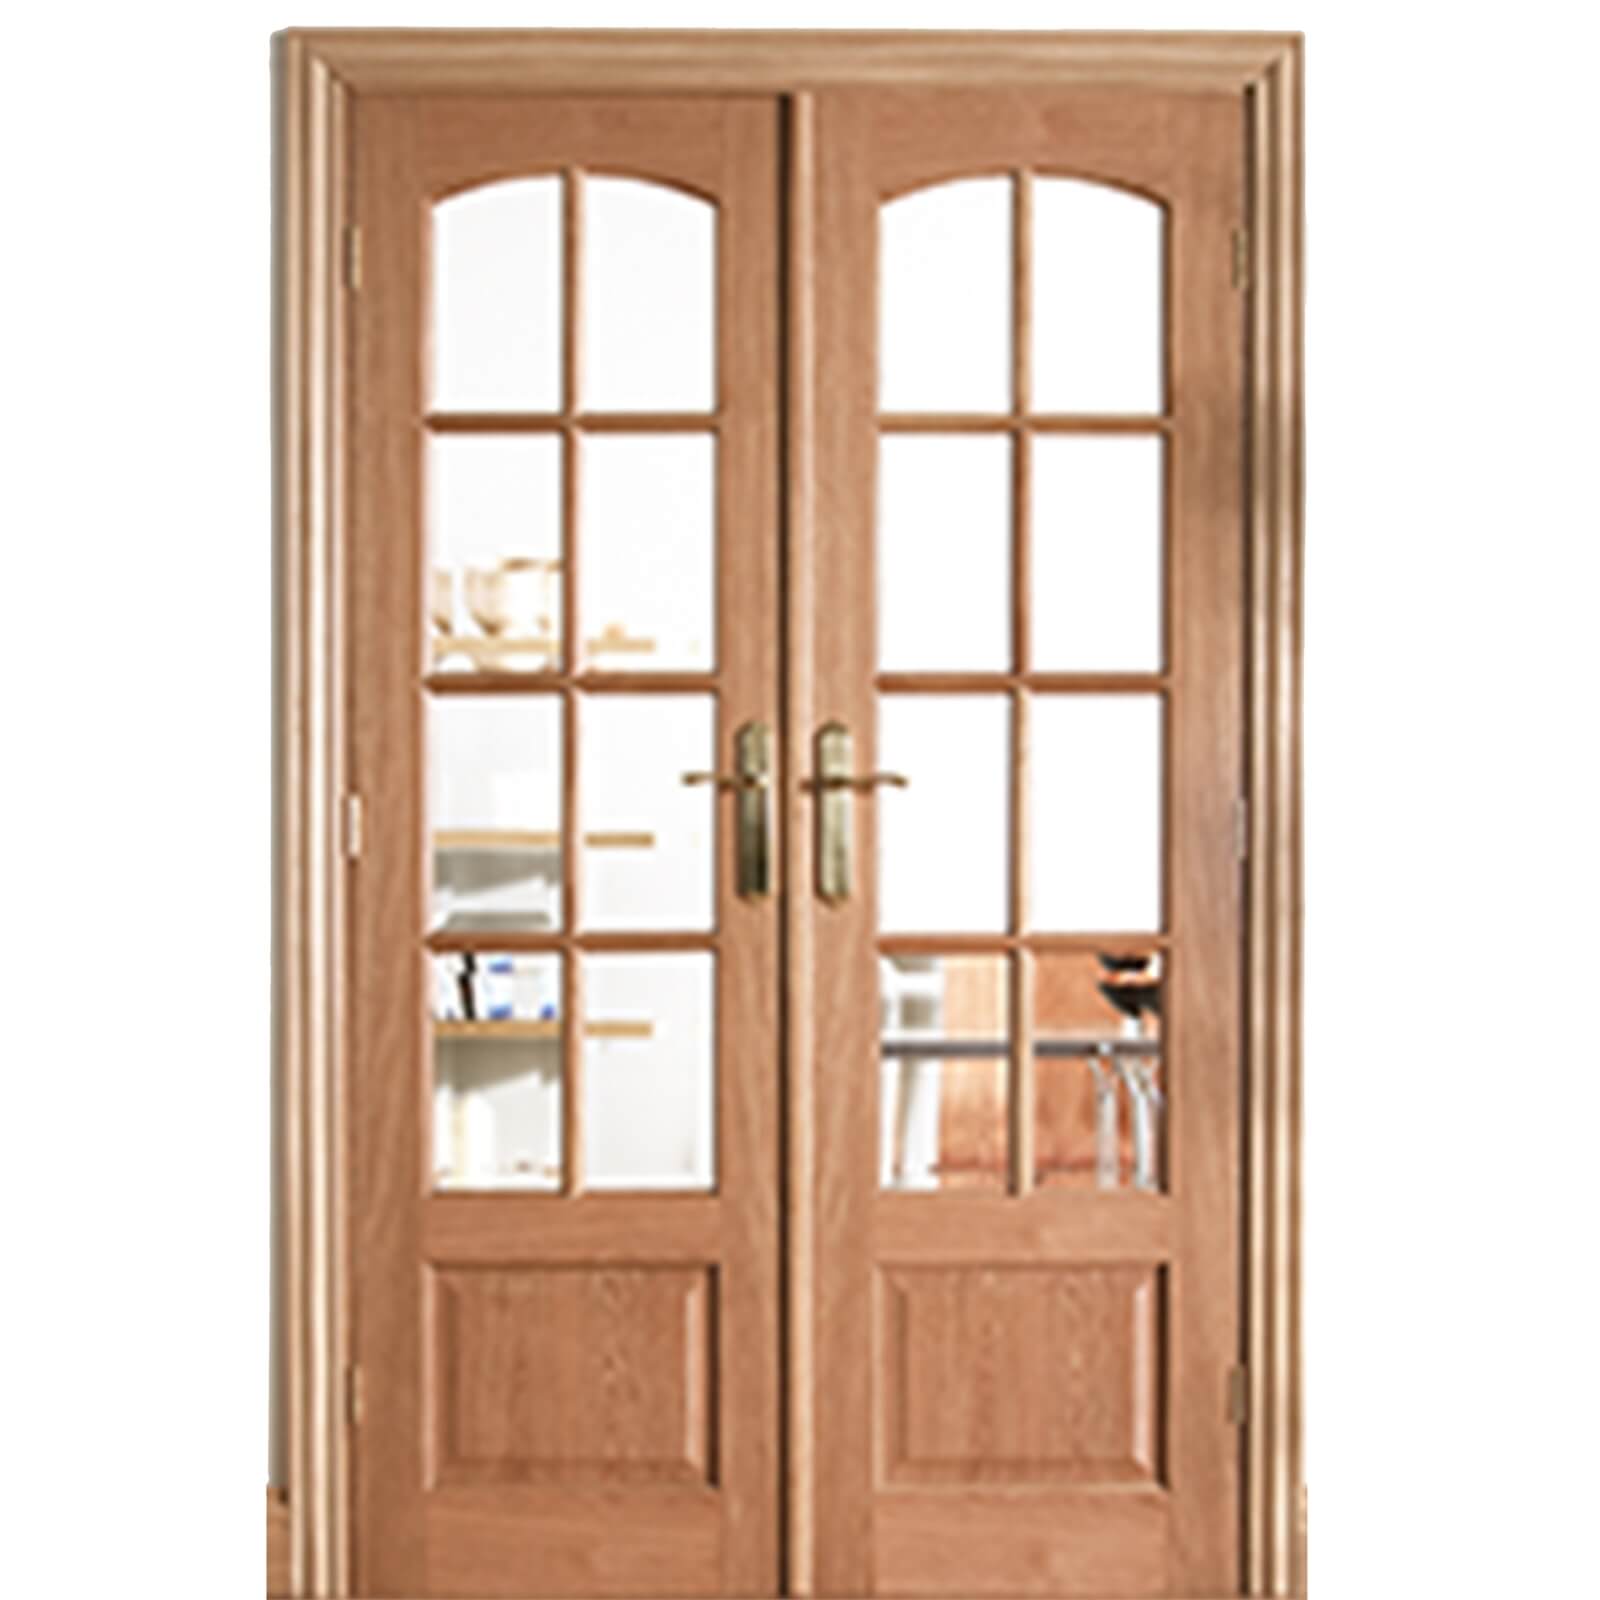 Worthing Internal Glazed Unfinished Oak Room Divider - 1246 x 2031mm